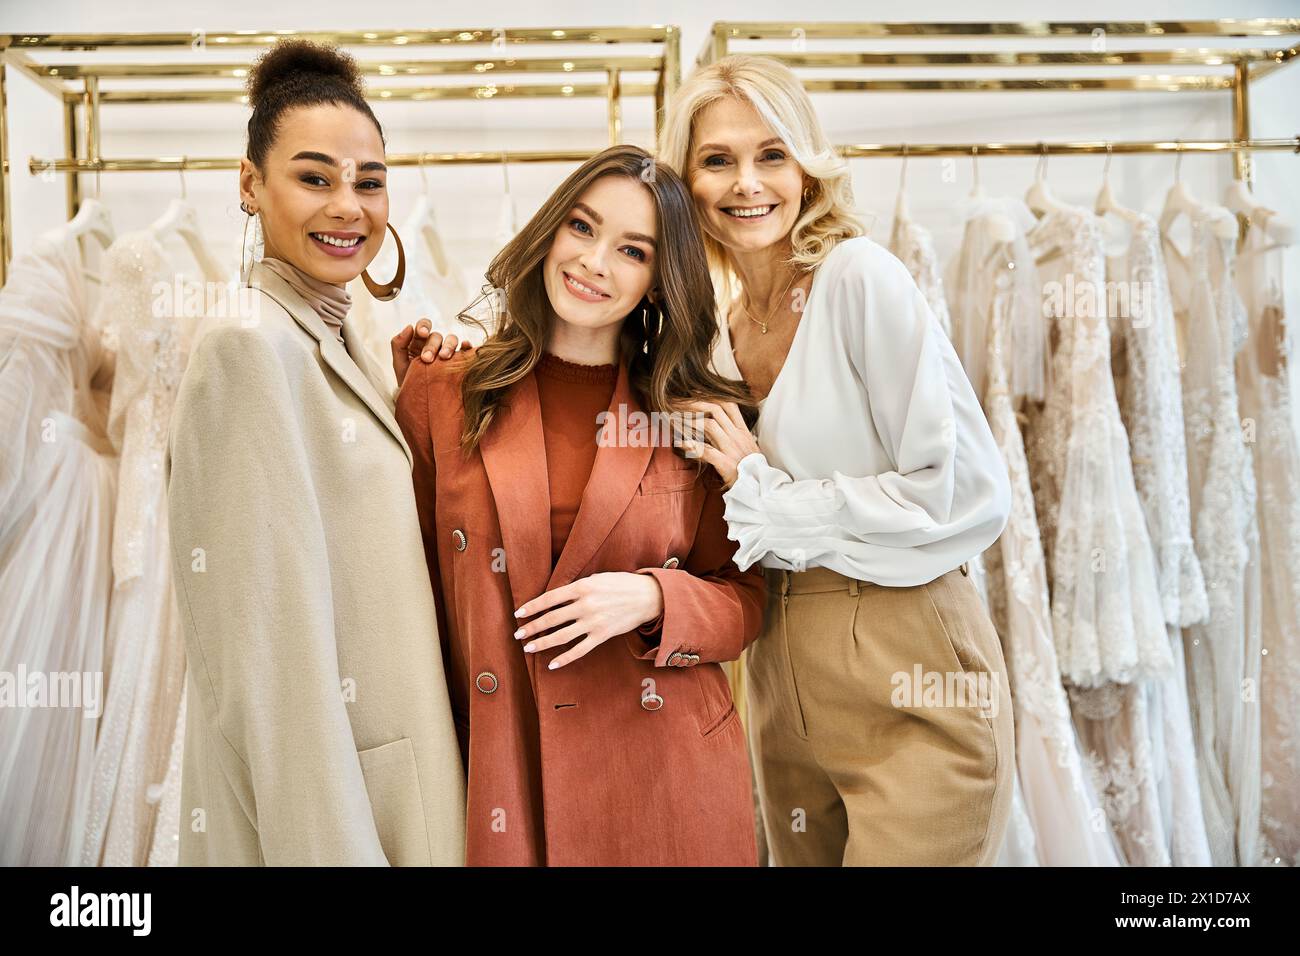 Eine junge Braut, ihre Mutter und ihre beste Freundin stehen neben einem Kleiderständer und kaufen das perfekte Hochzeitskleid. Stockfoto